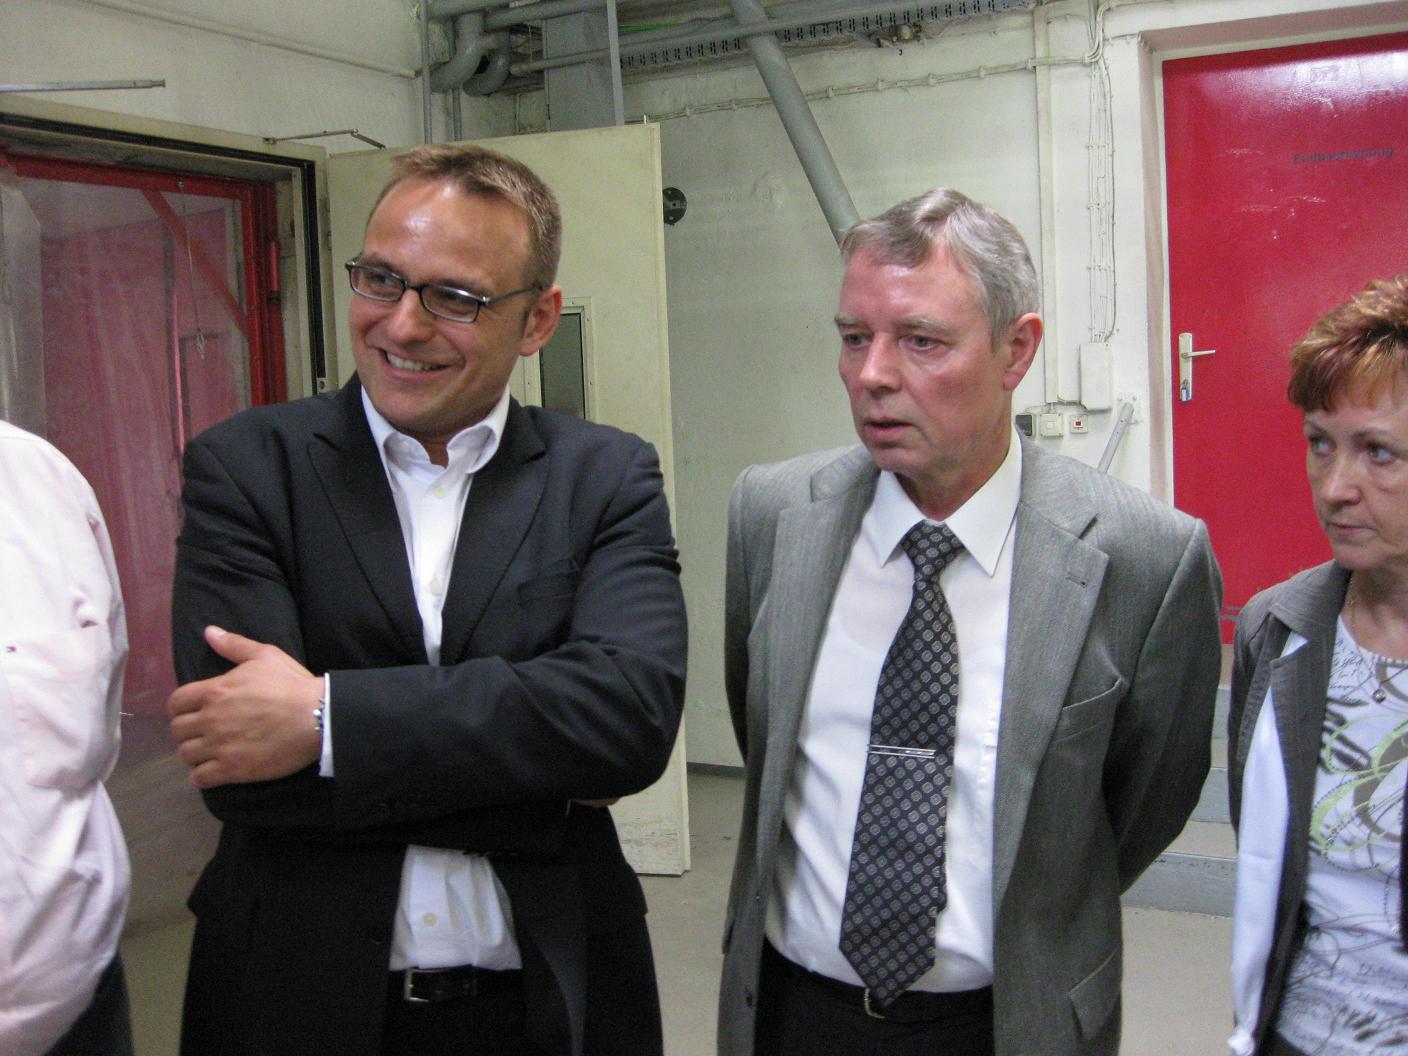 Geschäftsführer Thomas König gemeinsam mit Landtagskandidat Björn Lakenmacher